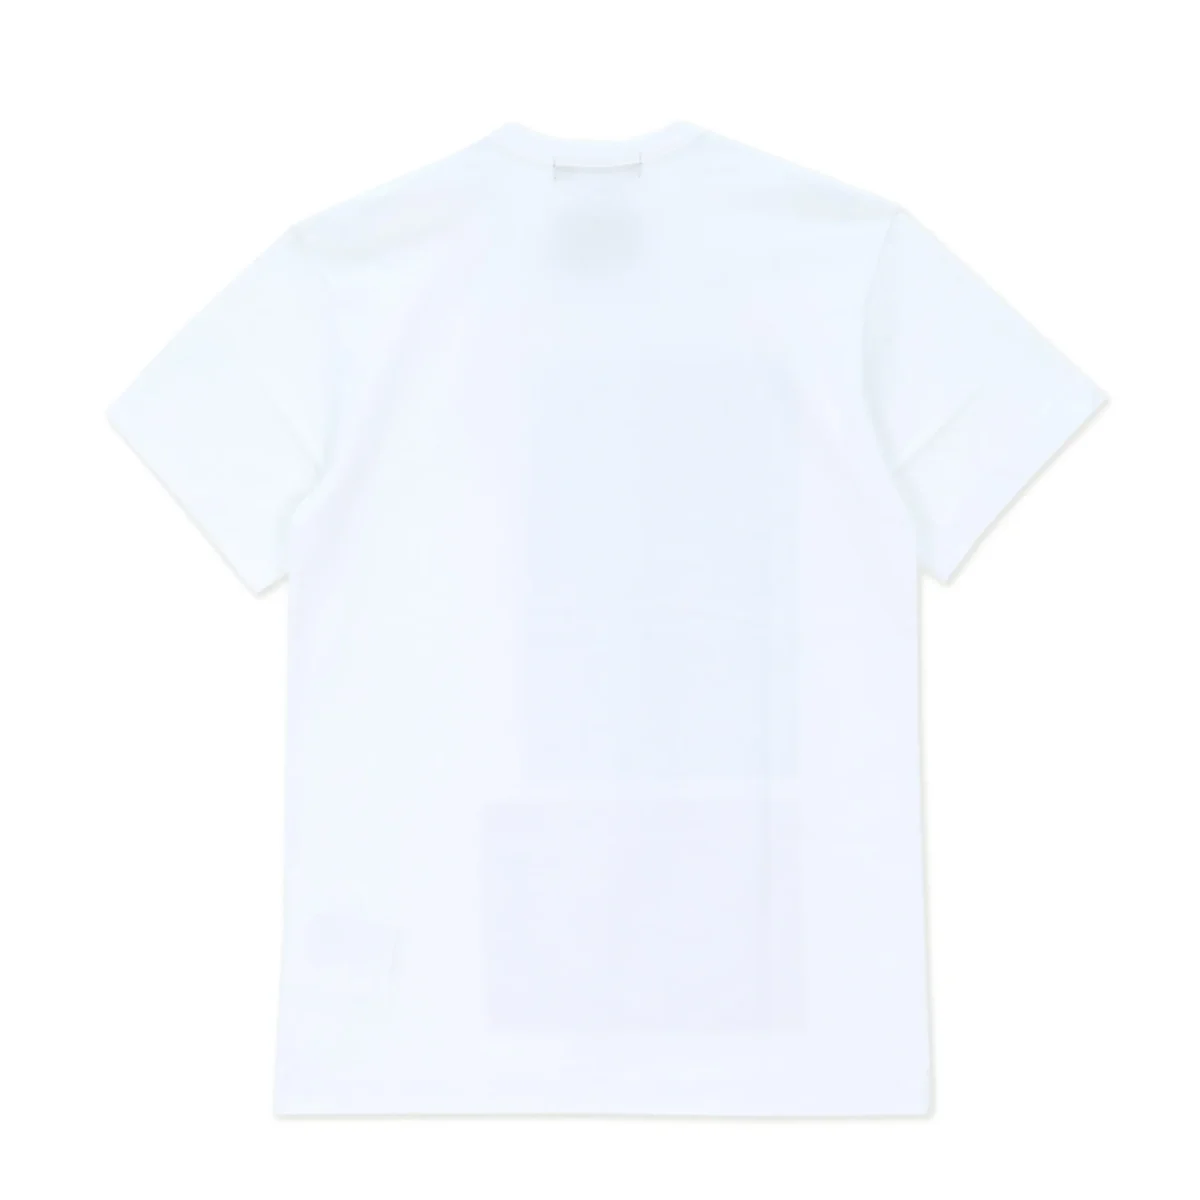 HD X Thomas Weil Cloud Print T Shirt